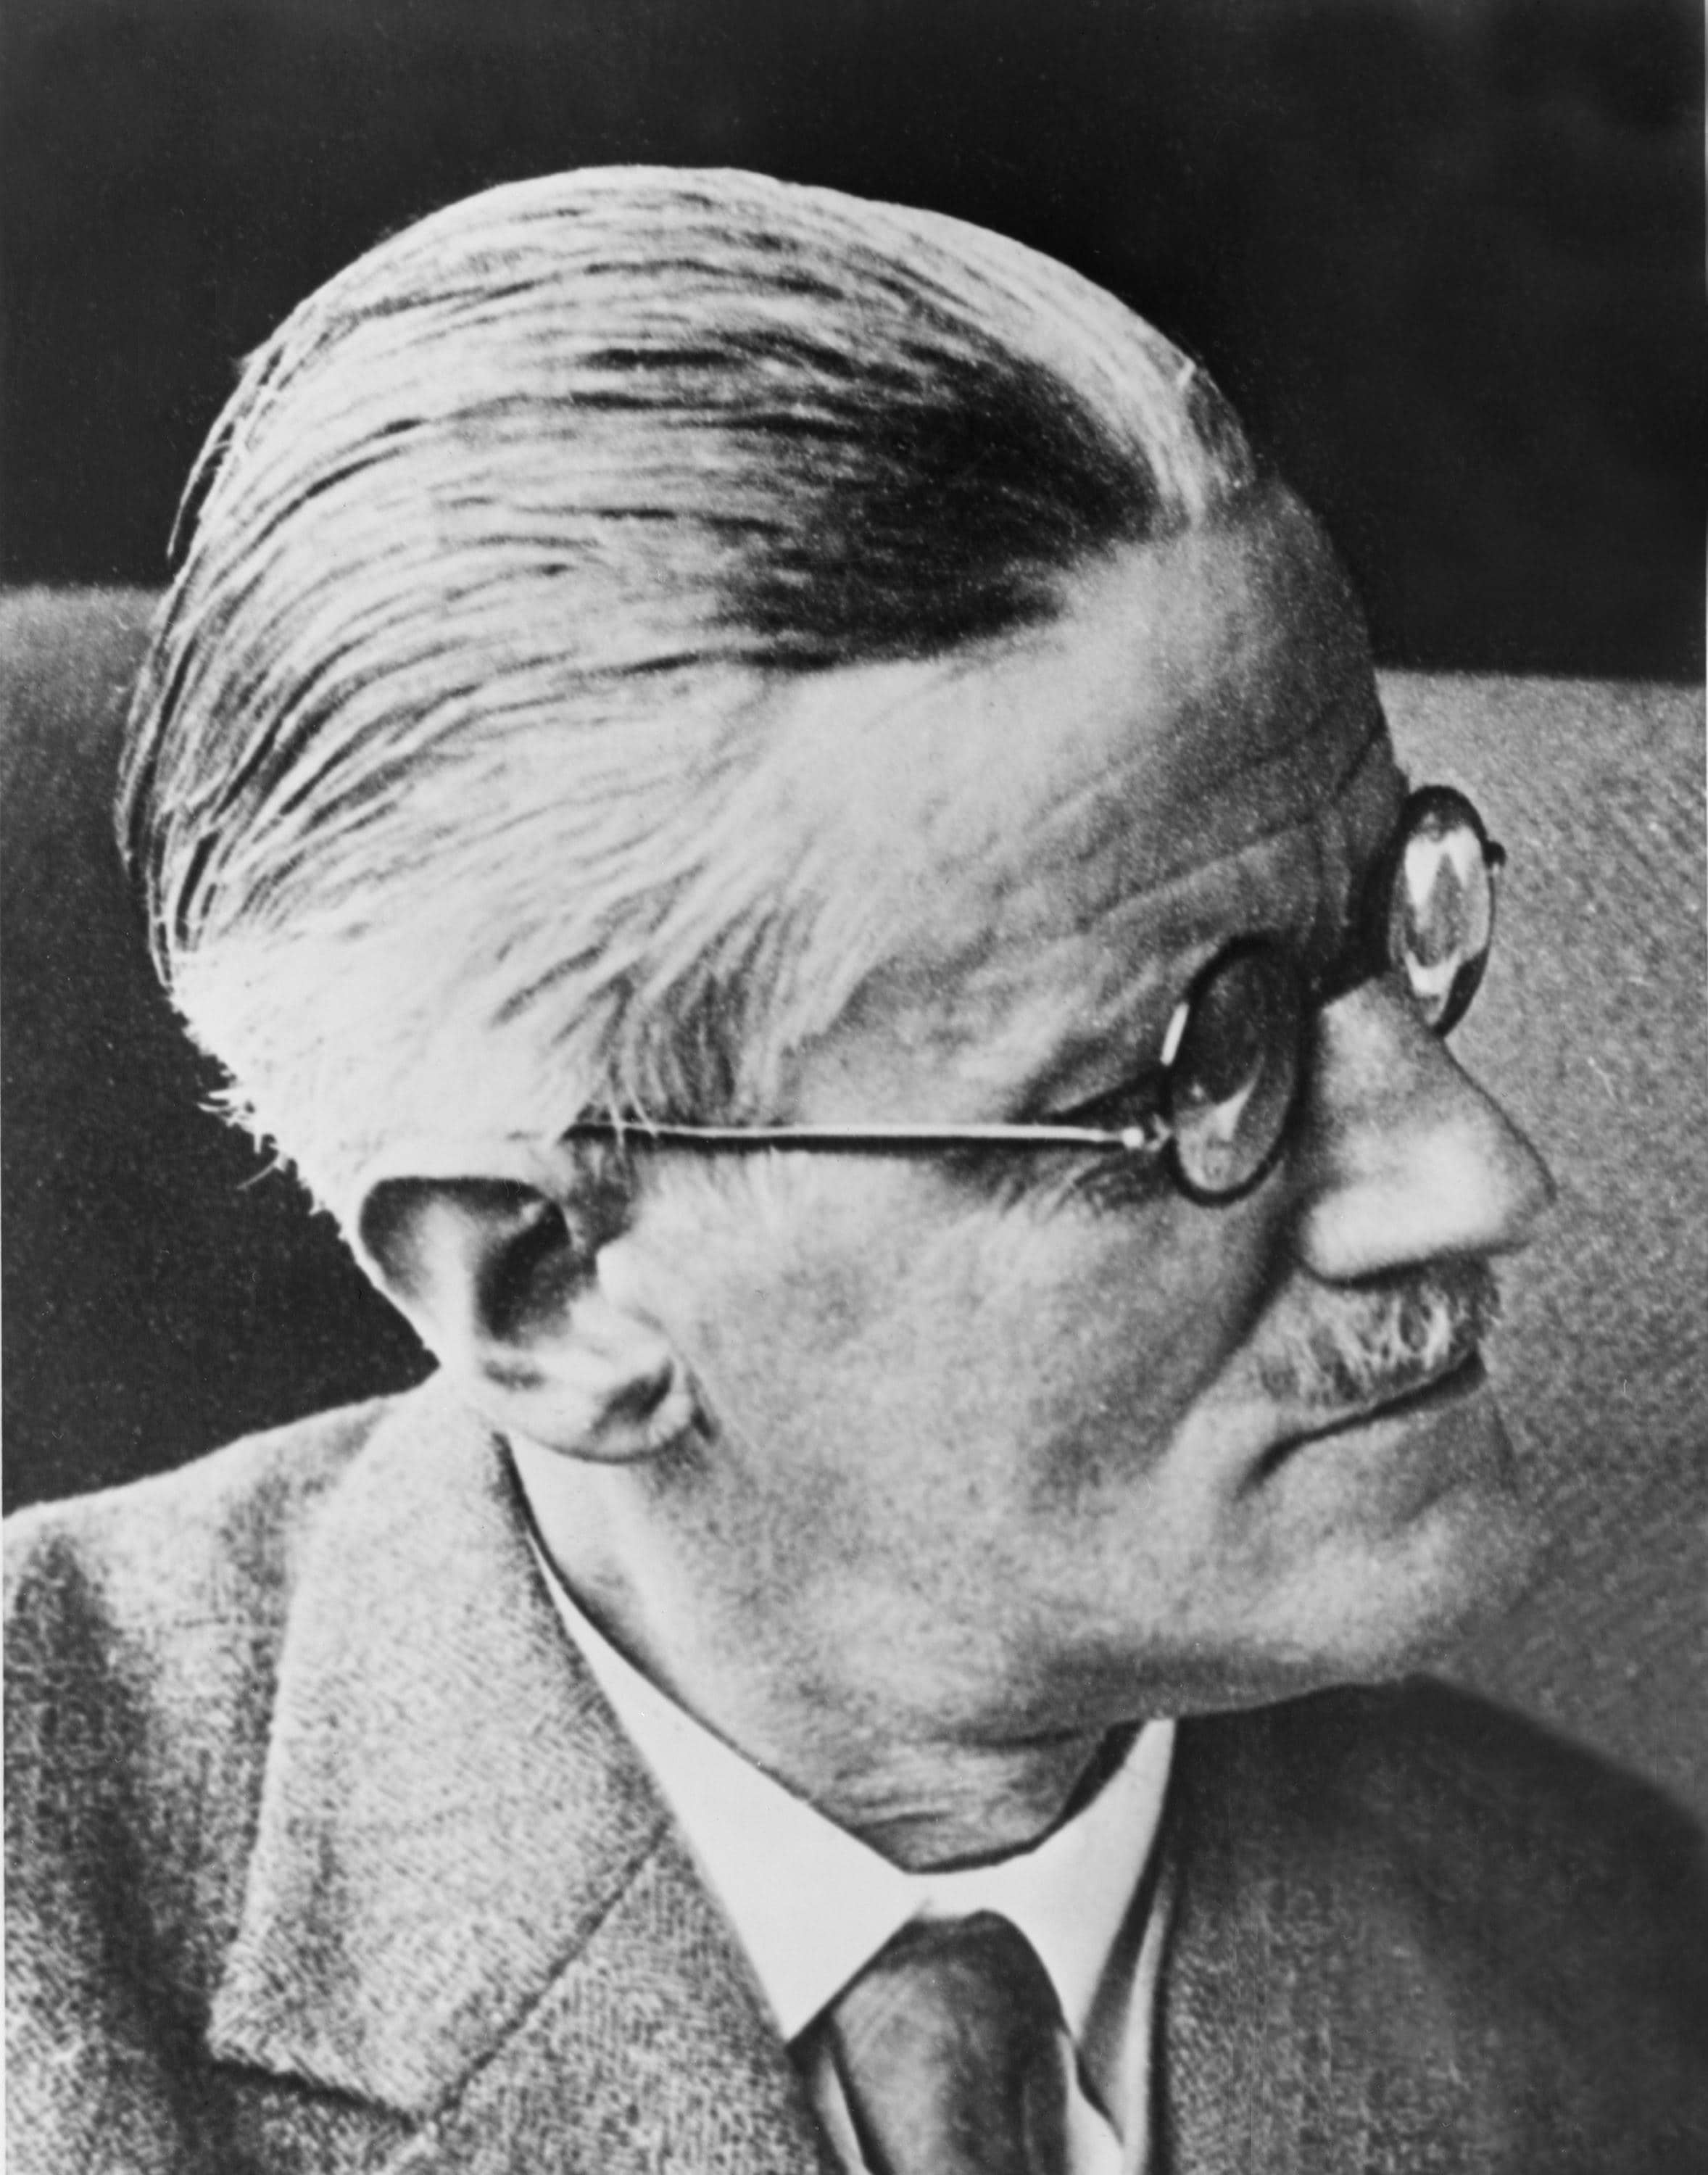 James Joyce a causa di una malattia infantile aveva serissimi problemi alla vista, e perciò scriveva con grosse matite colorate su cartoncino per poter vedere quello che scriveva.